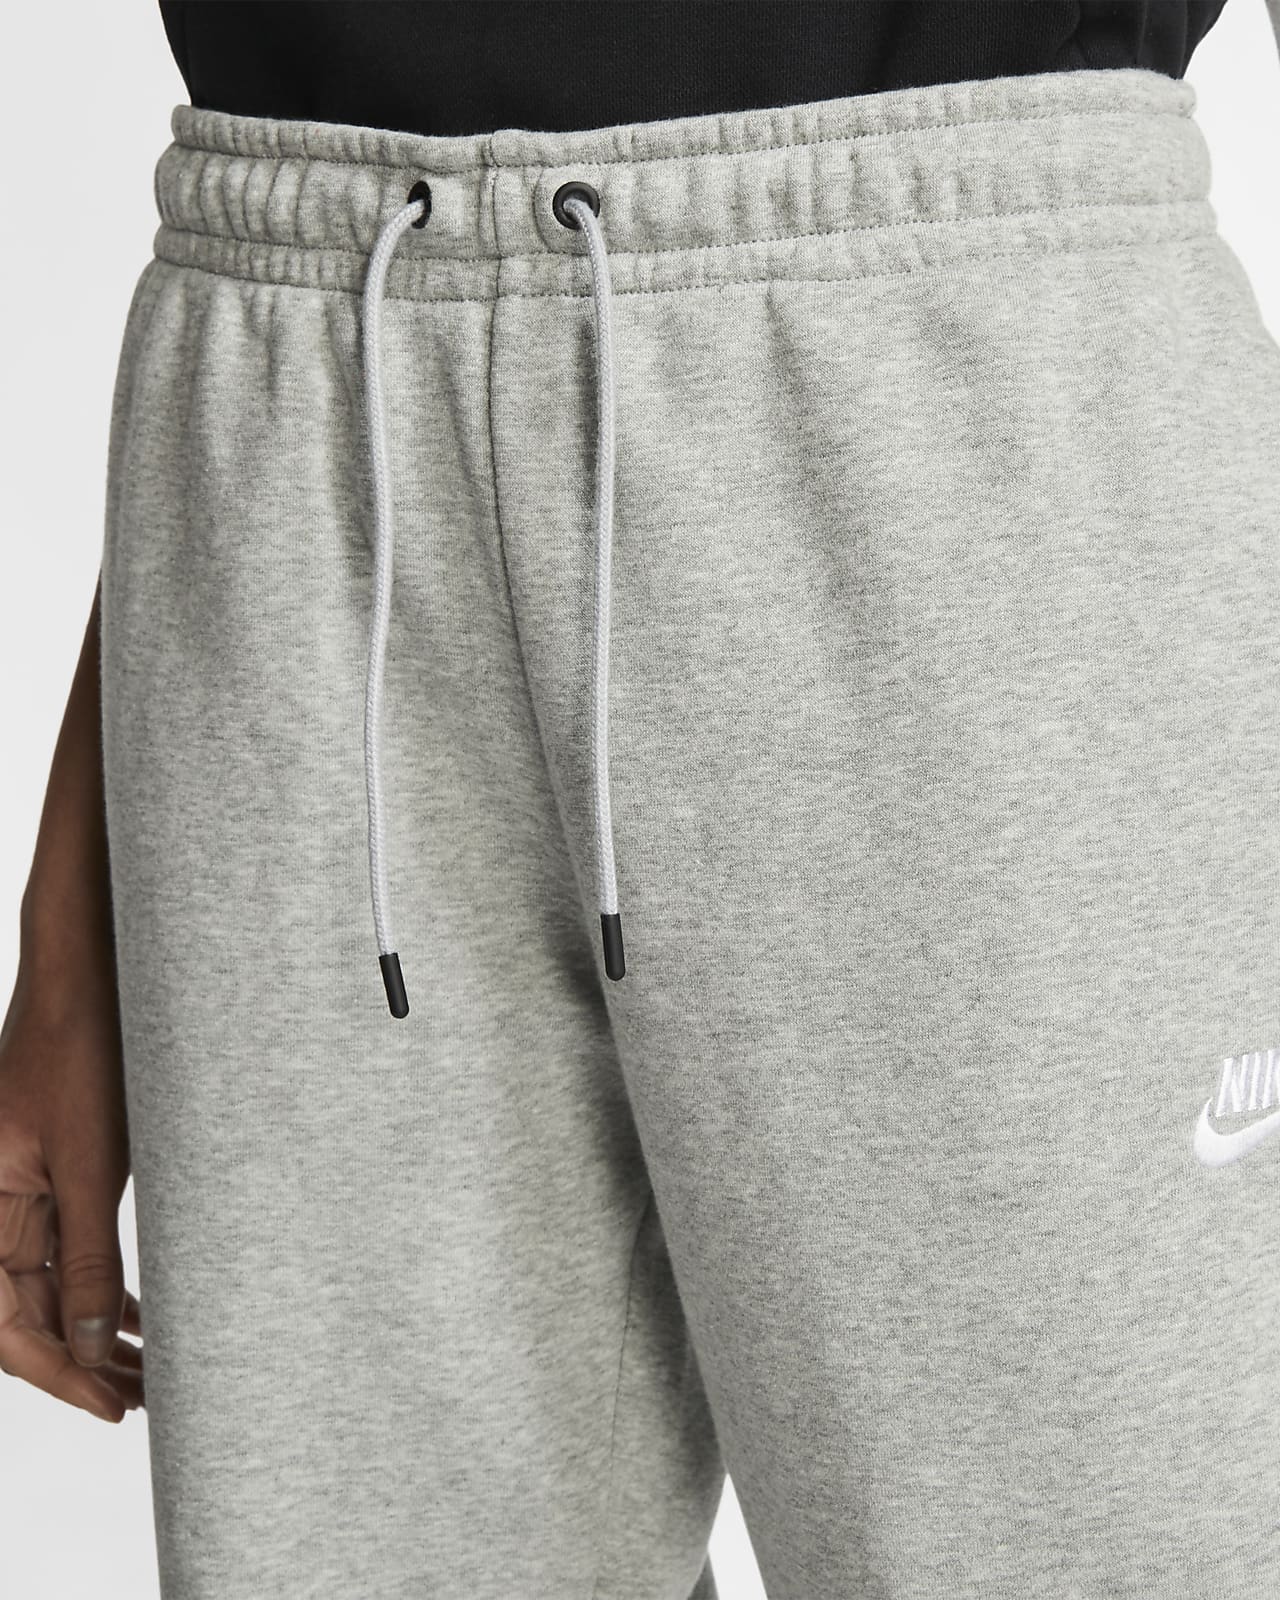 nike women's sportswear essential fleece jogger pants